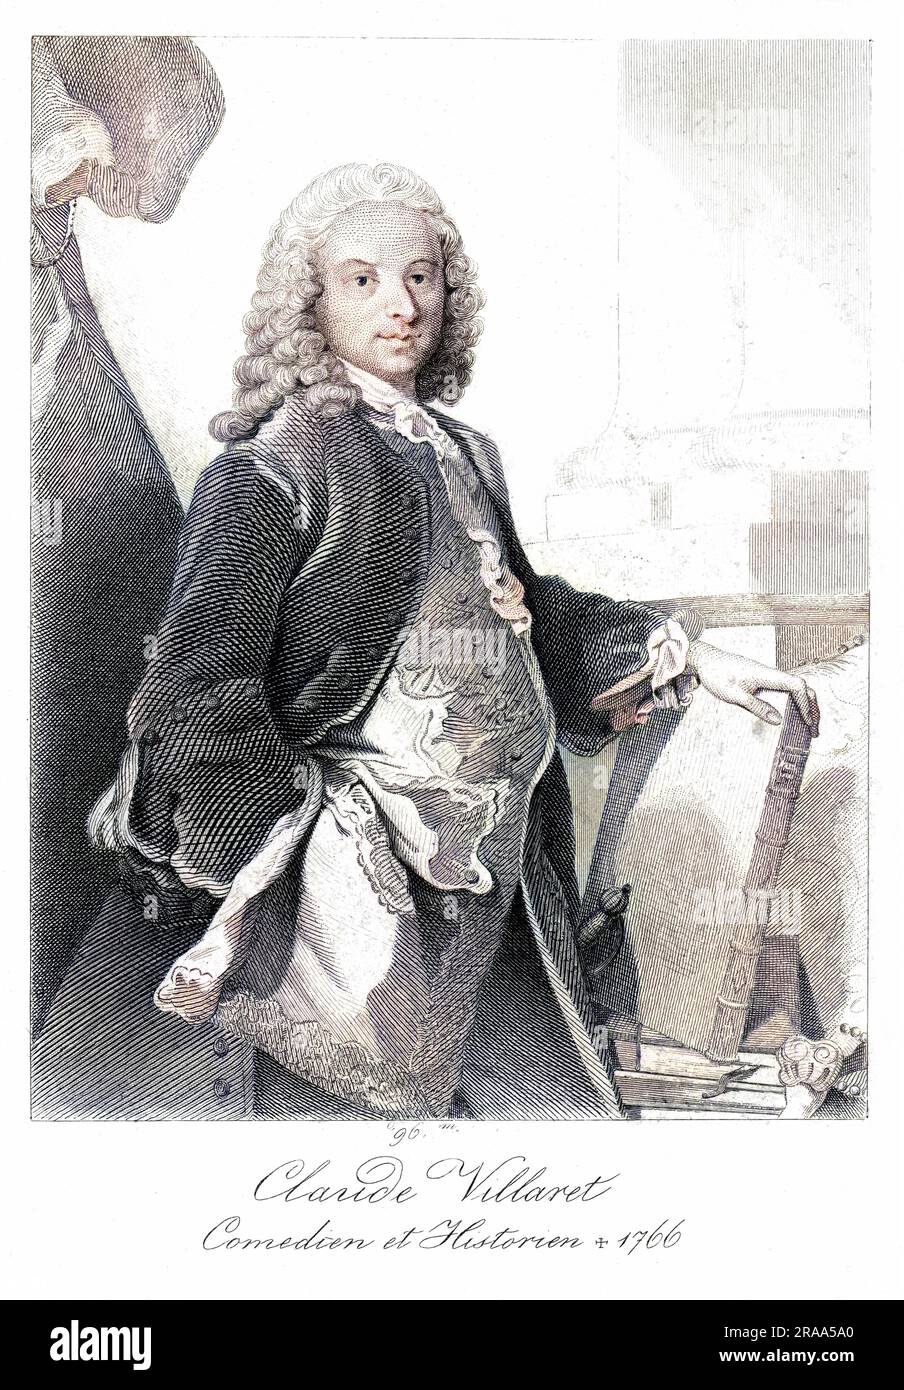 CLAUDE VILLARET, französischer Dramatiker und Historiker Datum: ? - 1766 Stockfoto